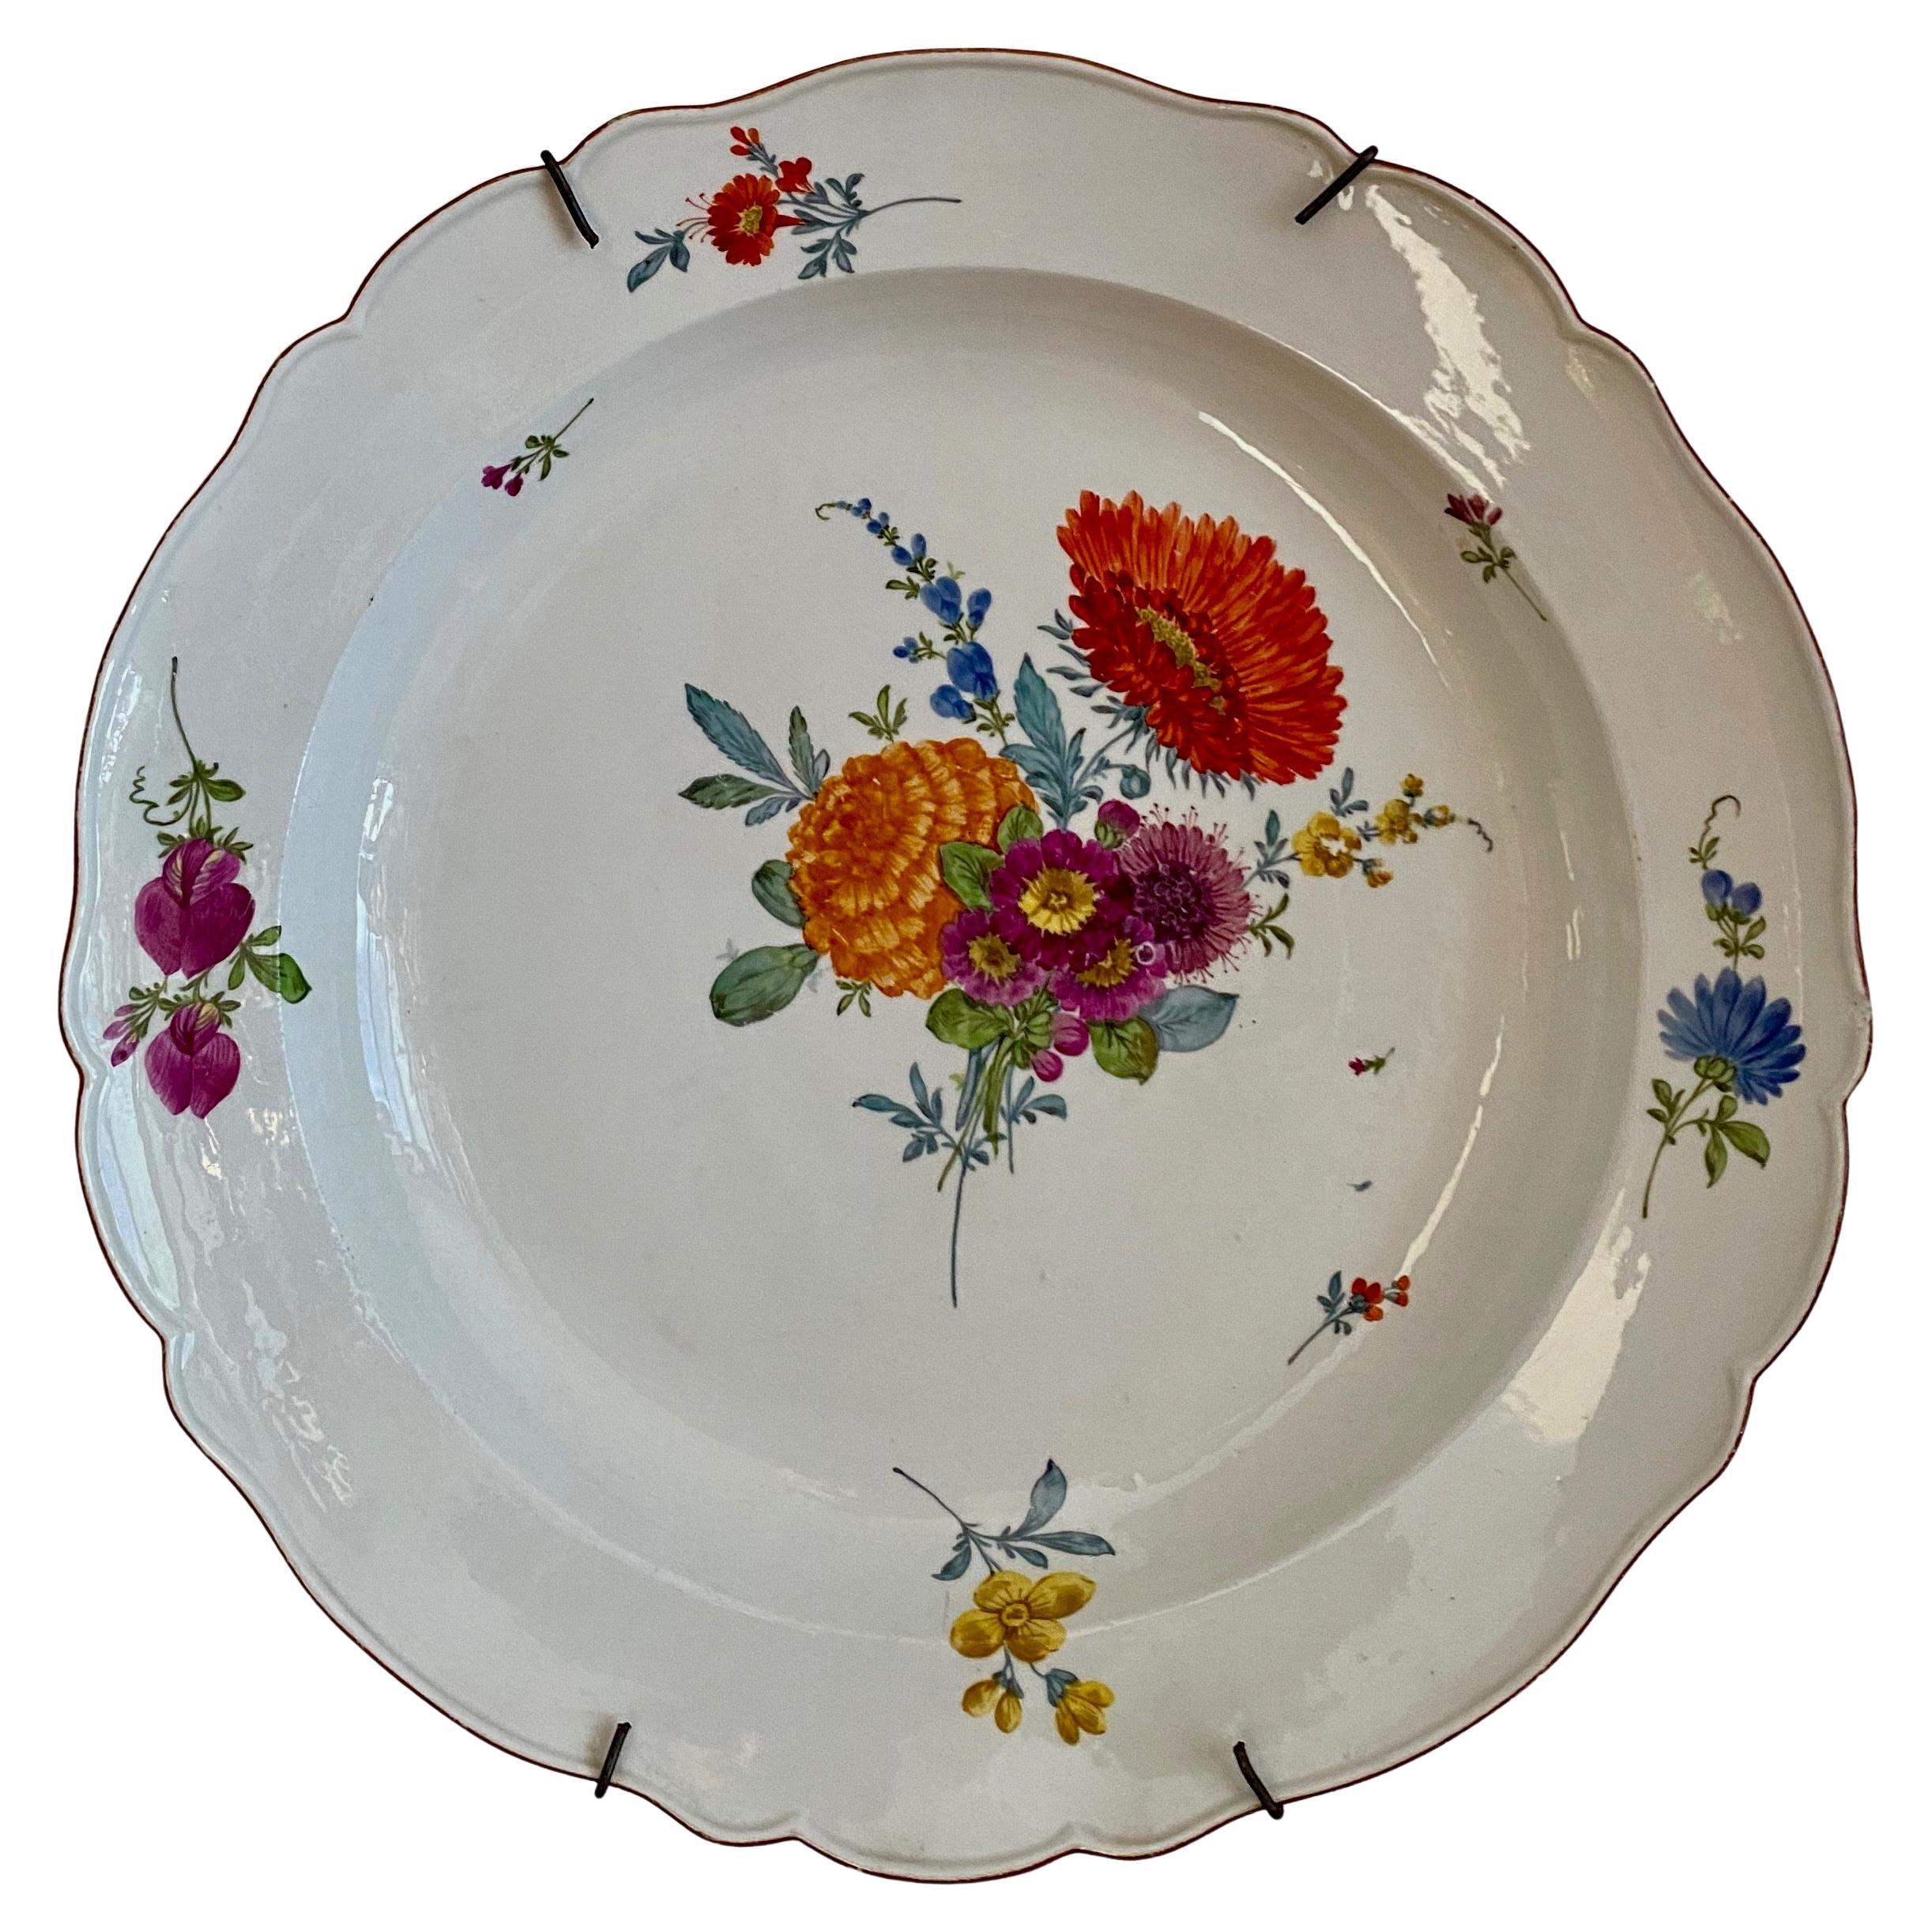 Assiette de présentation Meissen décorée d'un bouleau de fleurs, période Marcolini vers 1800